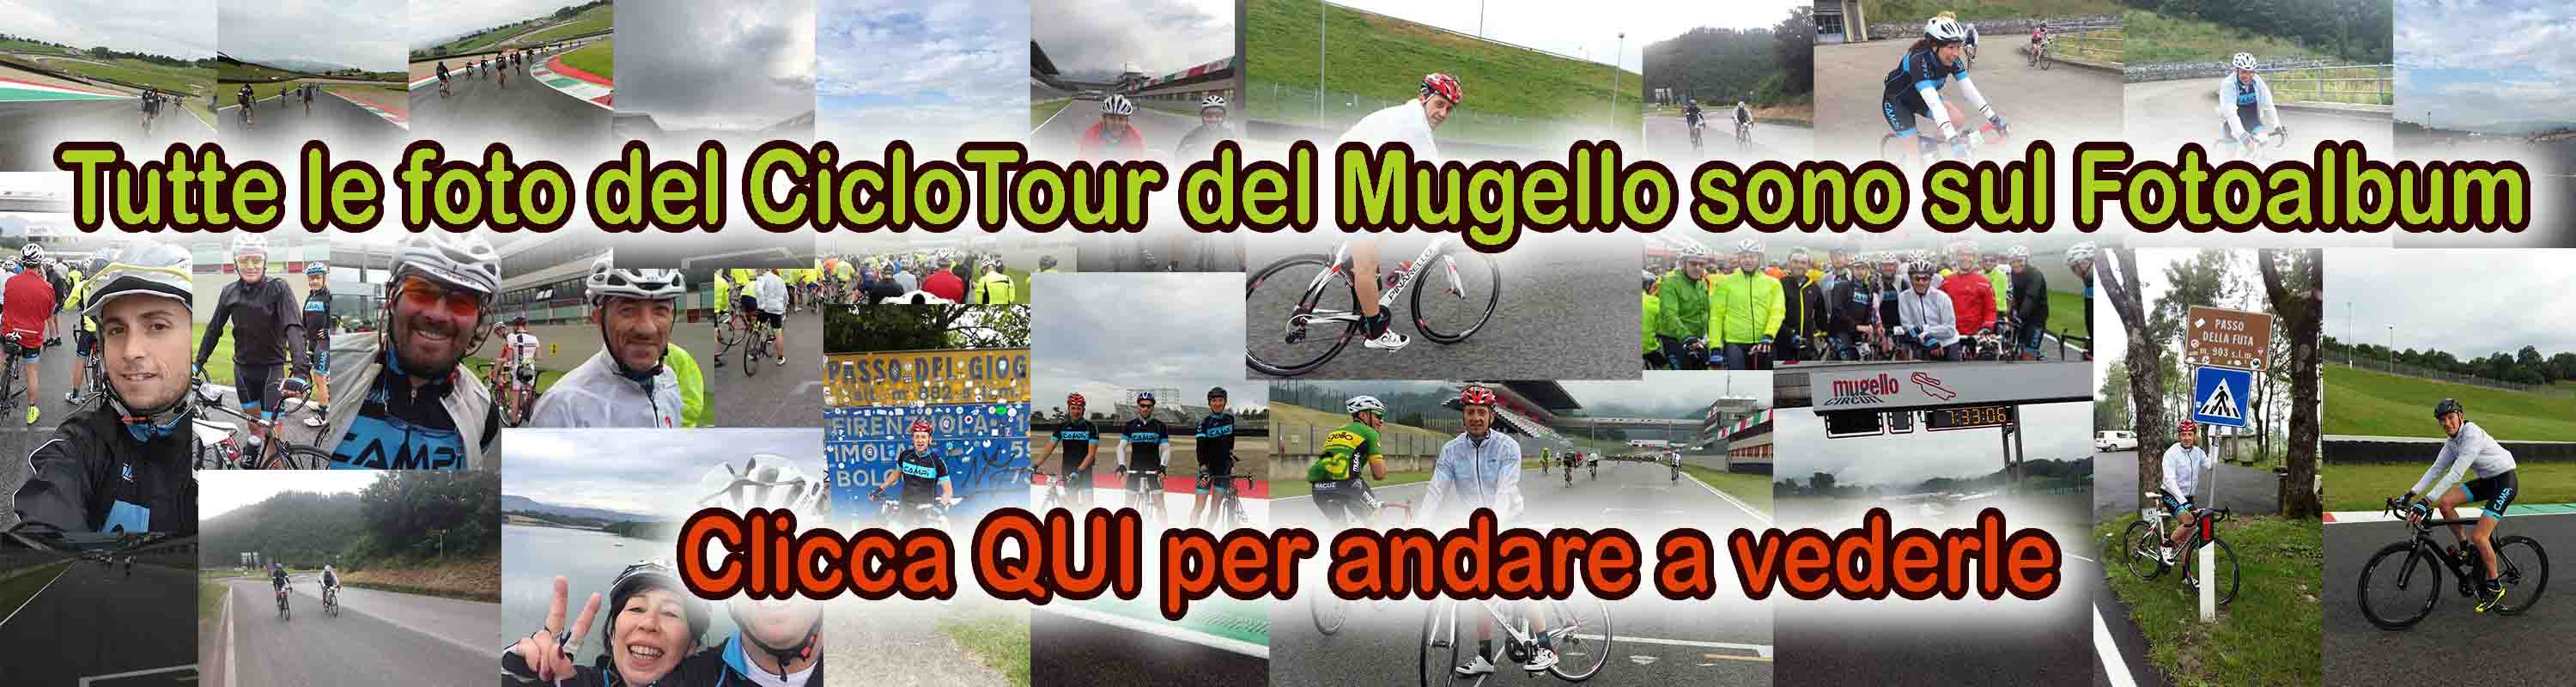 Banner per Link a Fotoalbum per CicloTour del Mugello 2016